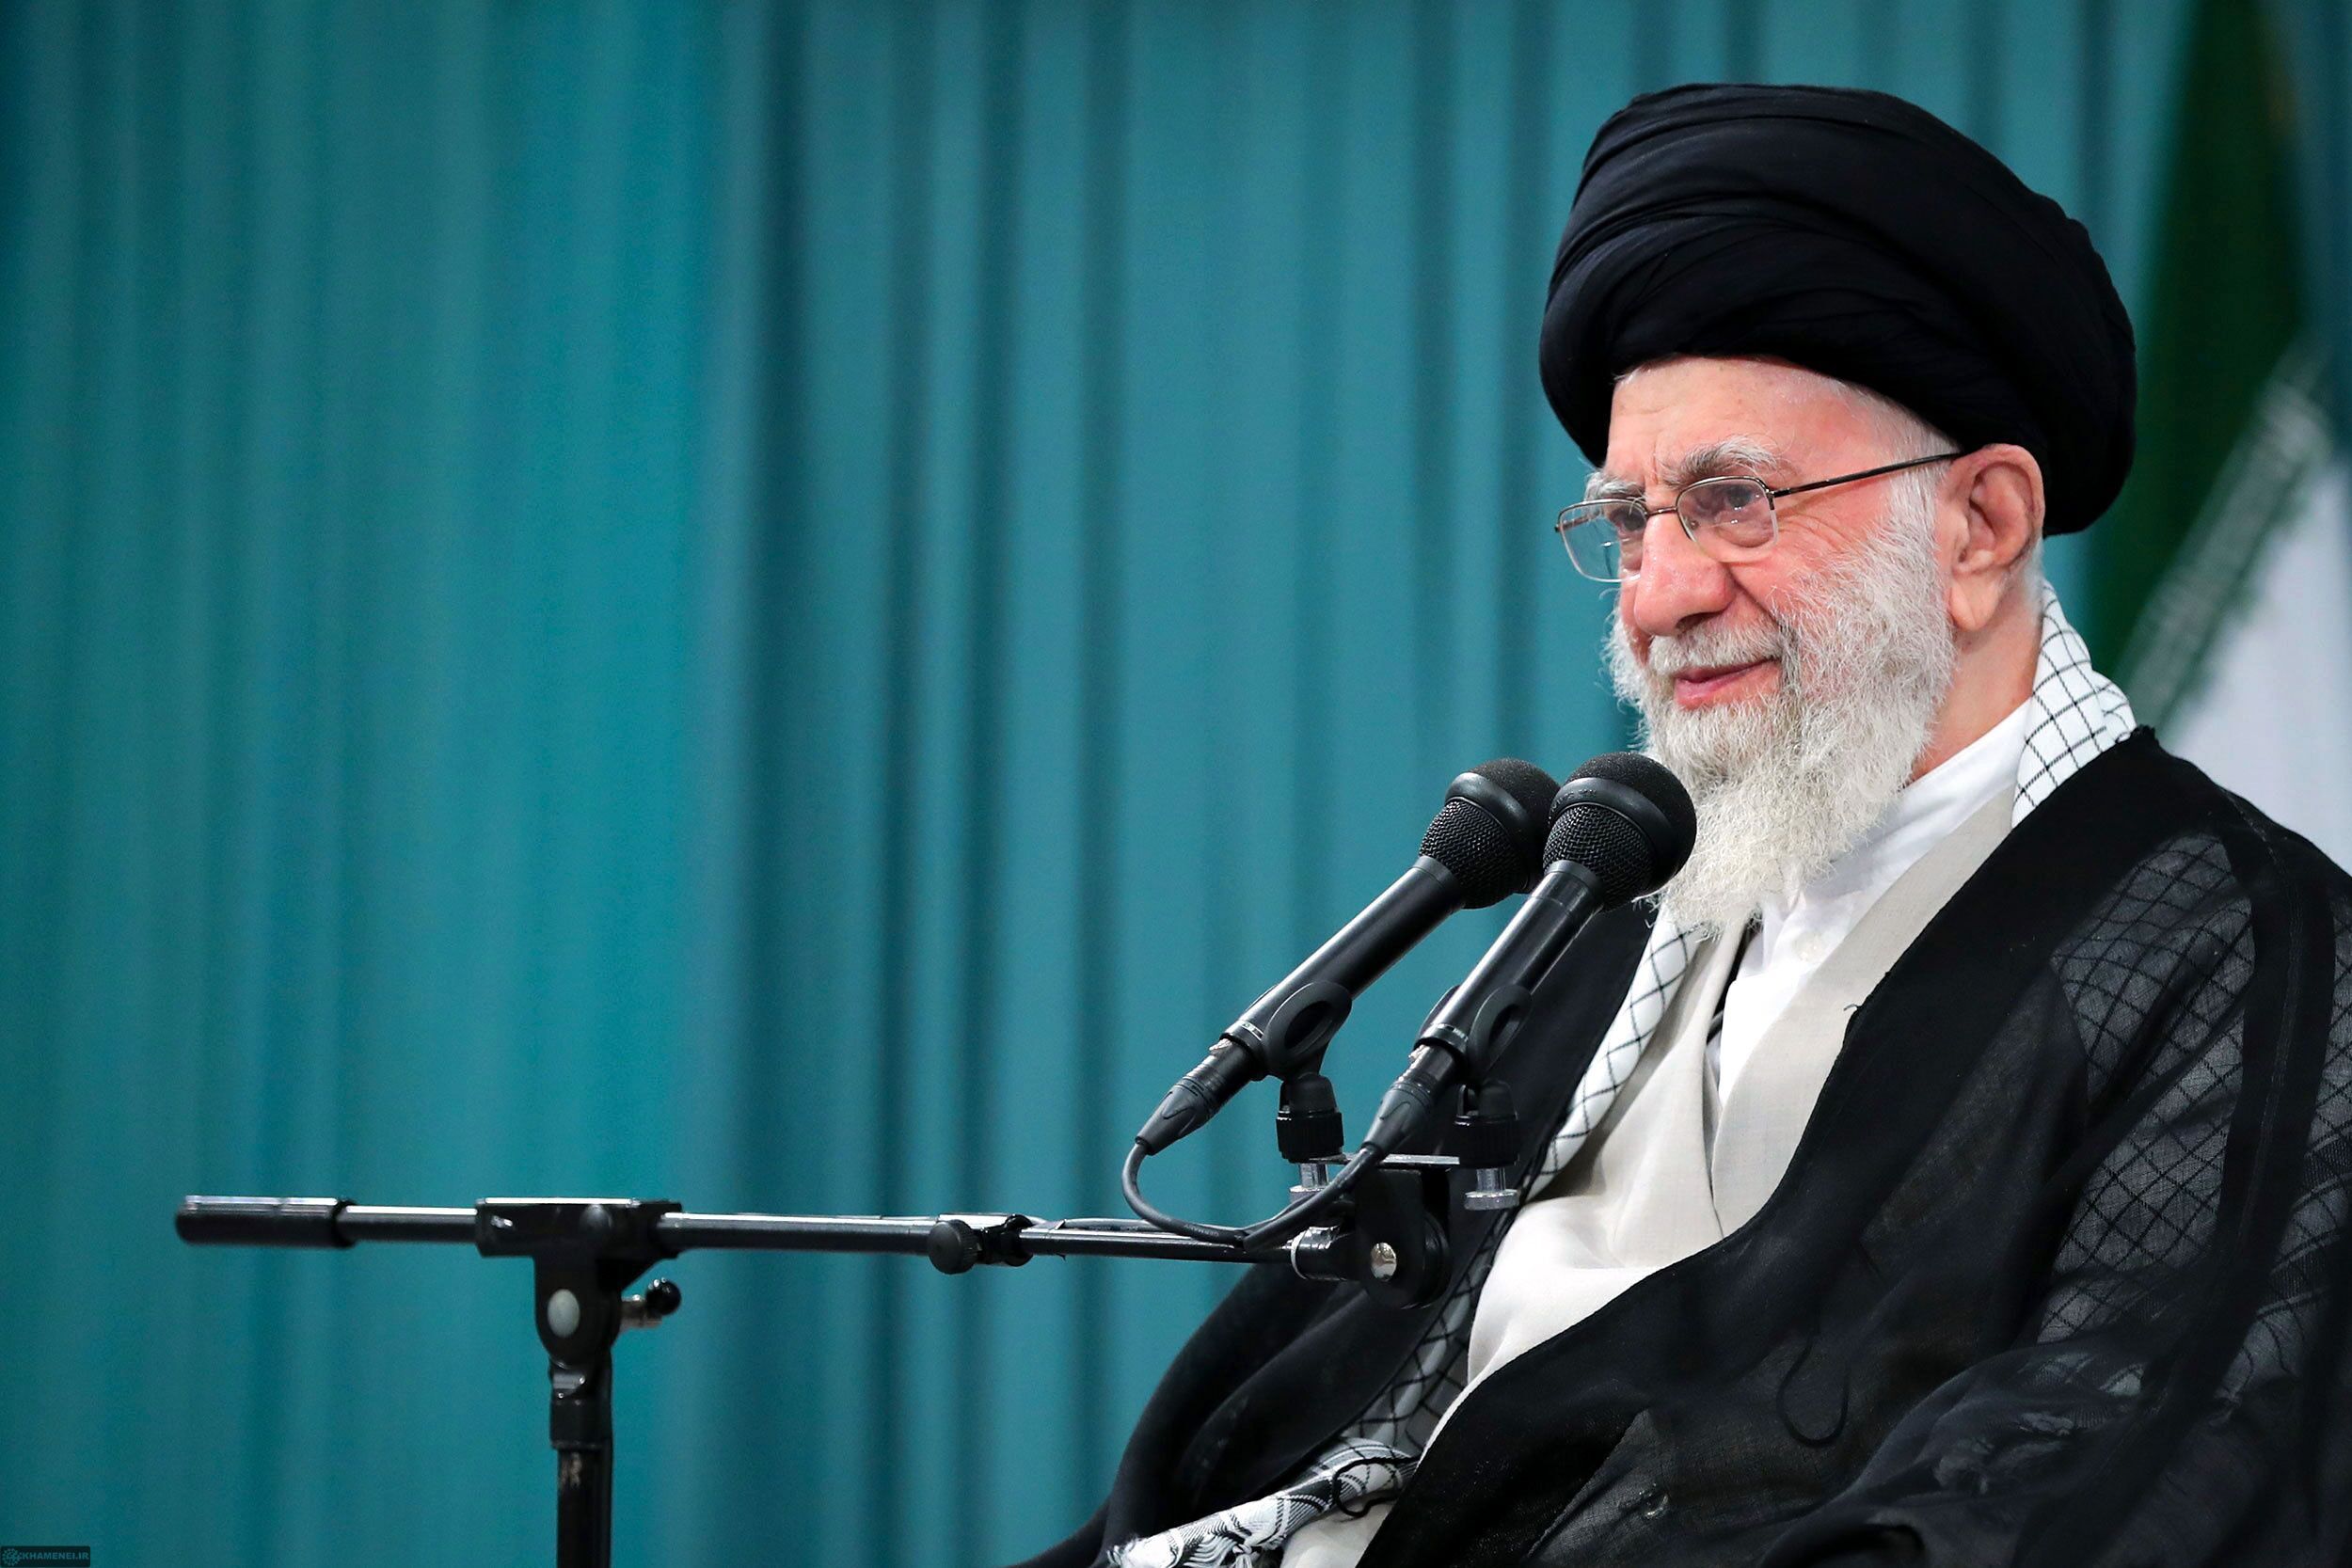 رهبرانقلاب: هدف از تحریم، در تنگنا گذاشتن ایران و تبعیت از خطوط استعماری و استکباری است / محال است ملت تسلیم شود